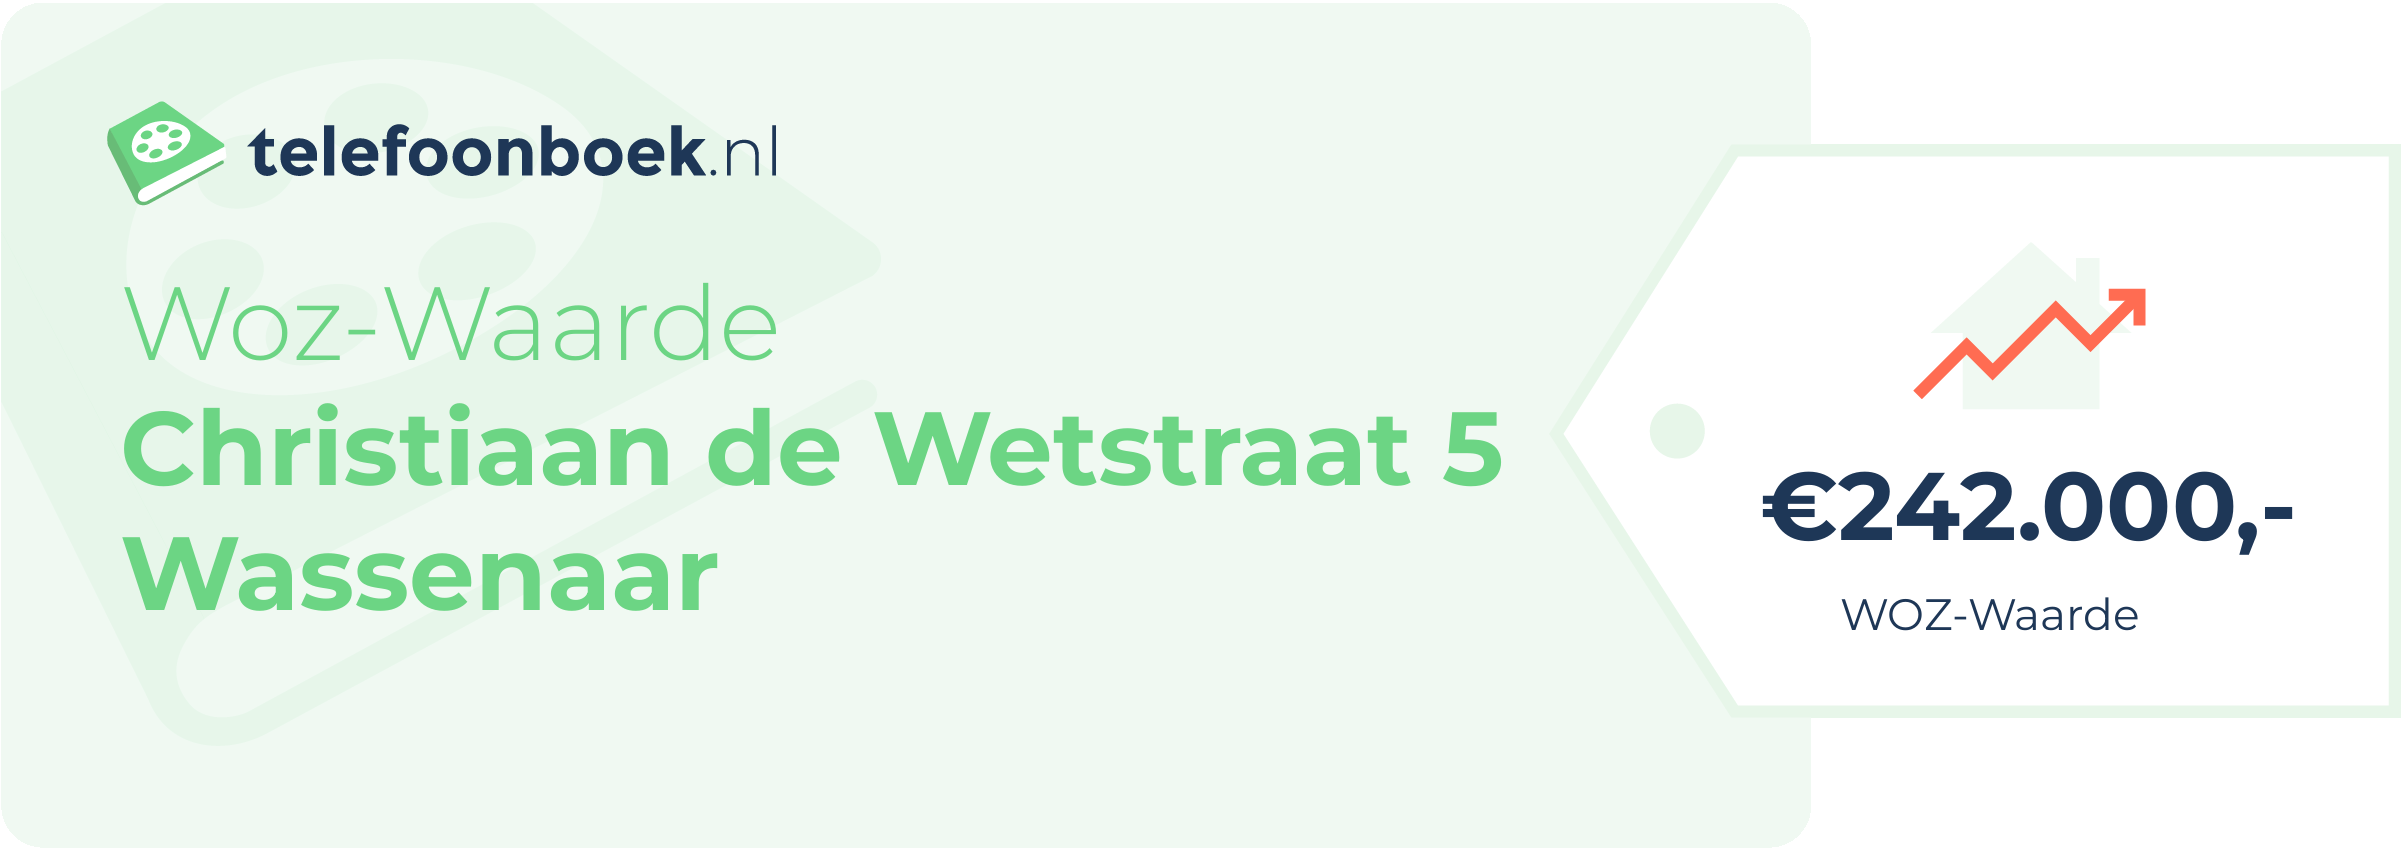 WOZ-waarde Christiaan De Wetstraat 5 Wassenaar